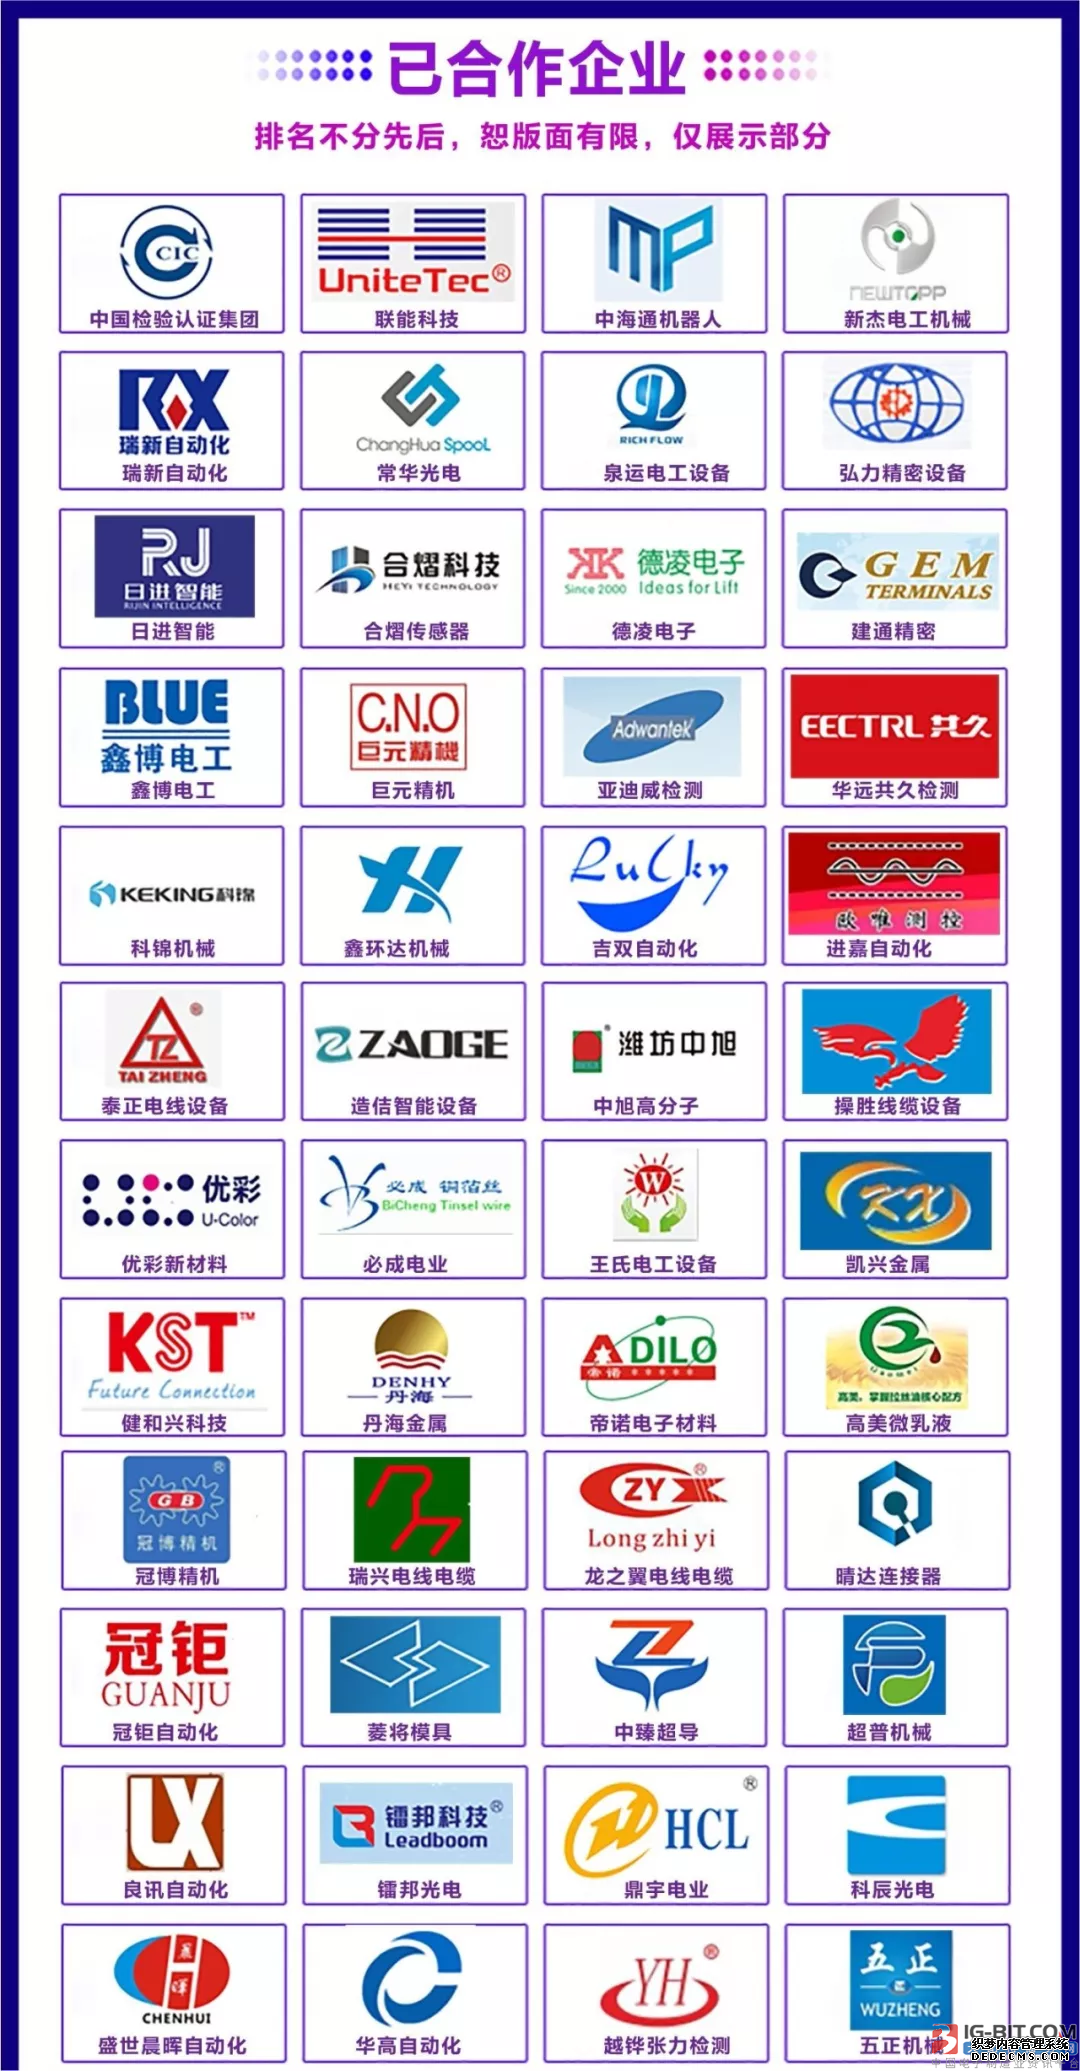 第五届CIME2020亚太区华南(虎门)国际线缆智造展